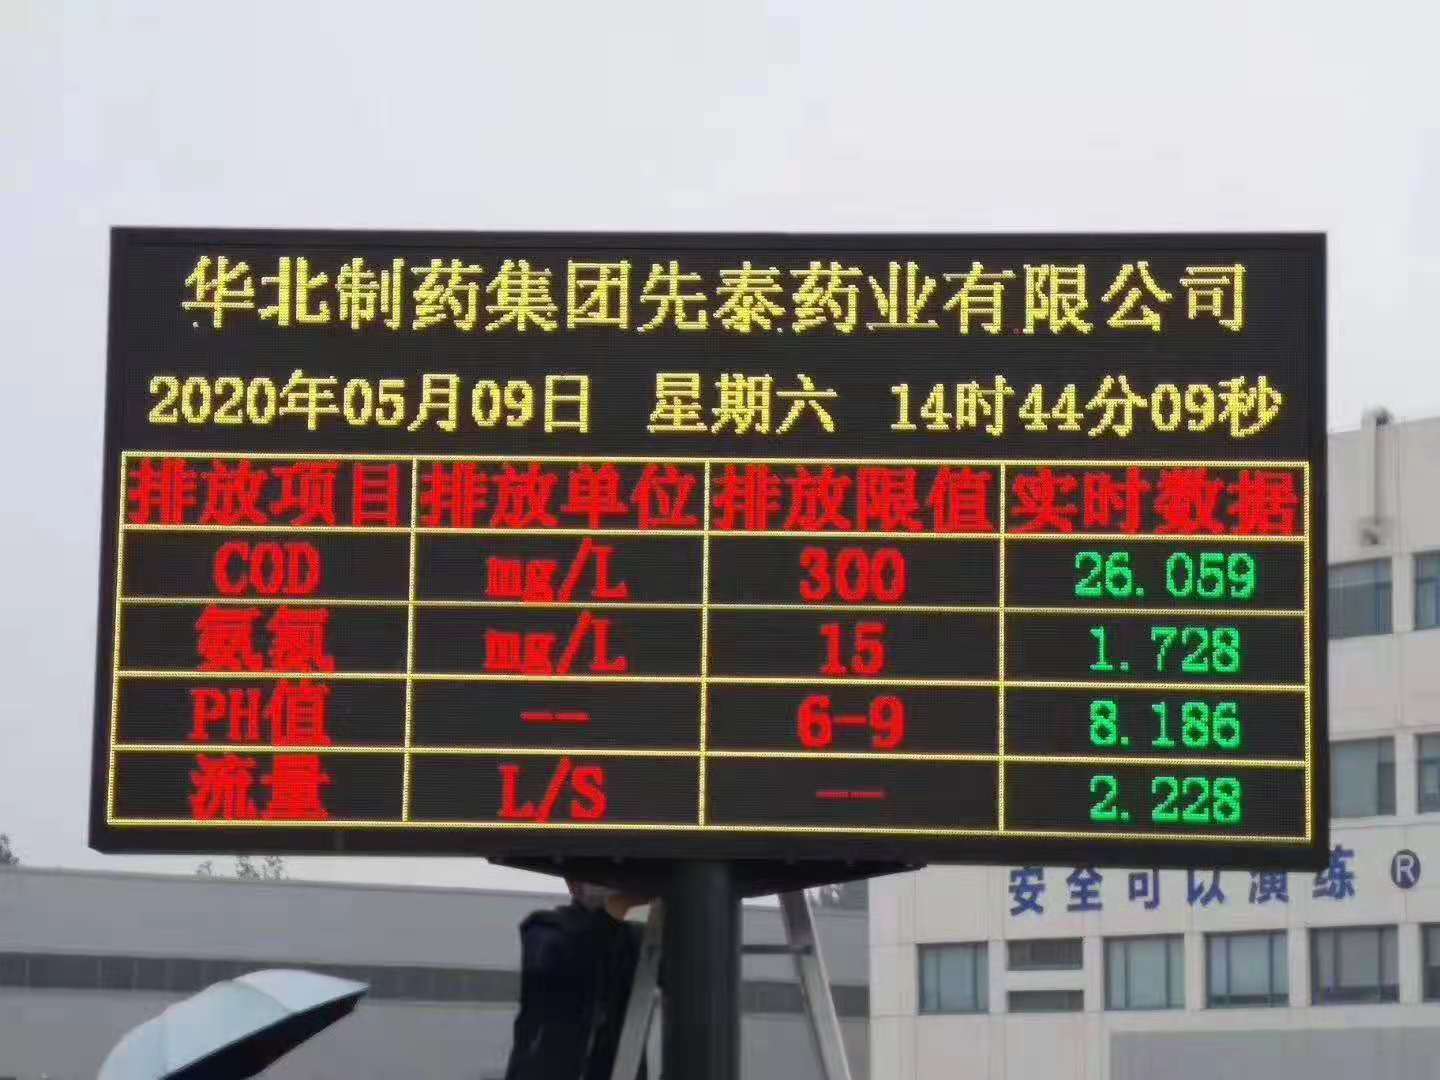 惠州環保公示LED屏廠家 博控數采儀對接顯示屏